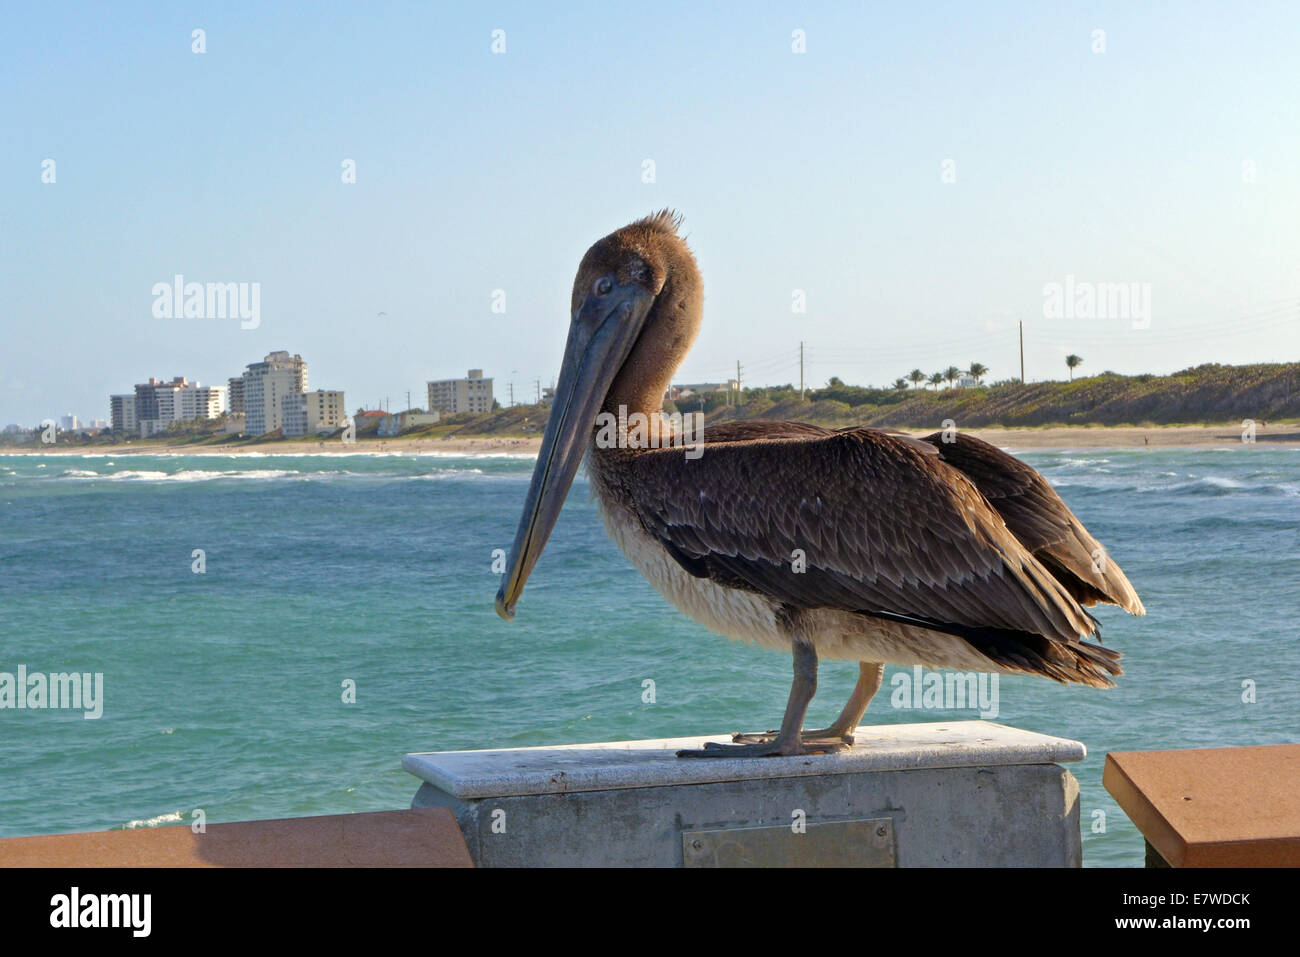 A pelican on a pier in Juno Beach Florida Stock Photo